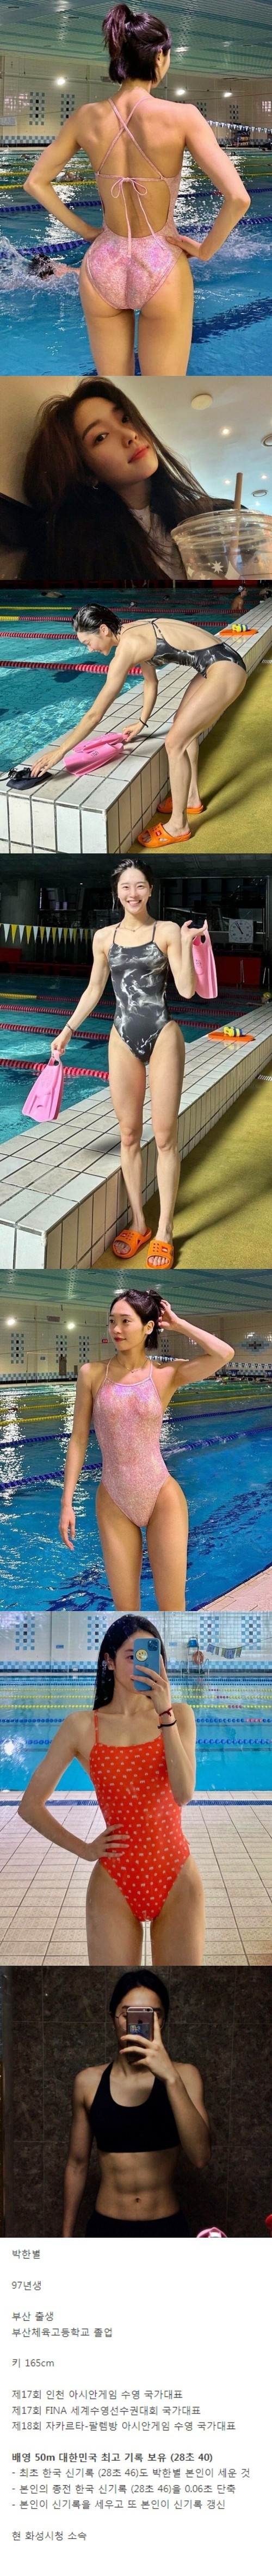 ㅇㅎ) 대한민국 신기록 보유한 수영선수